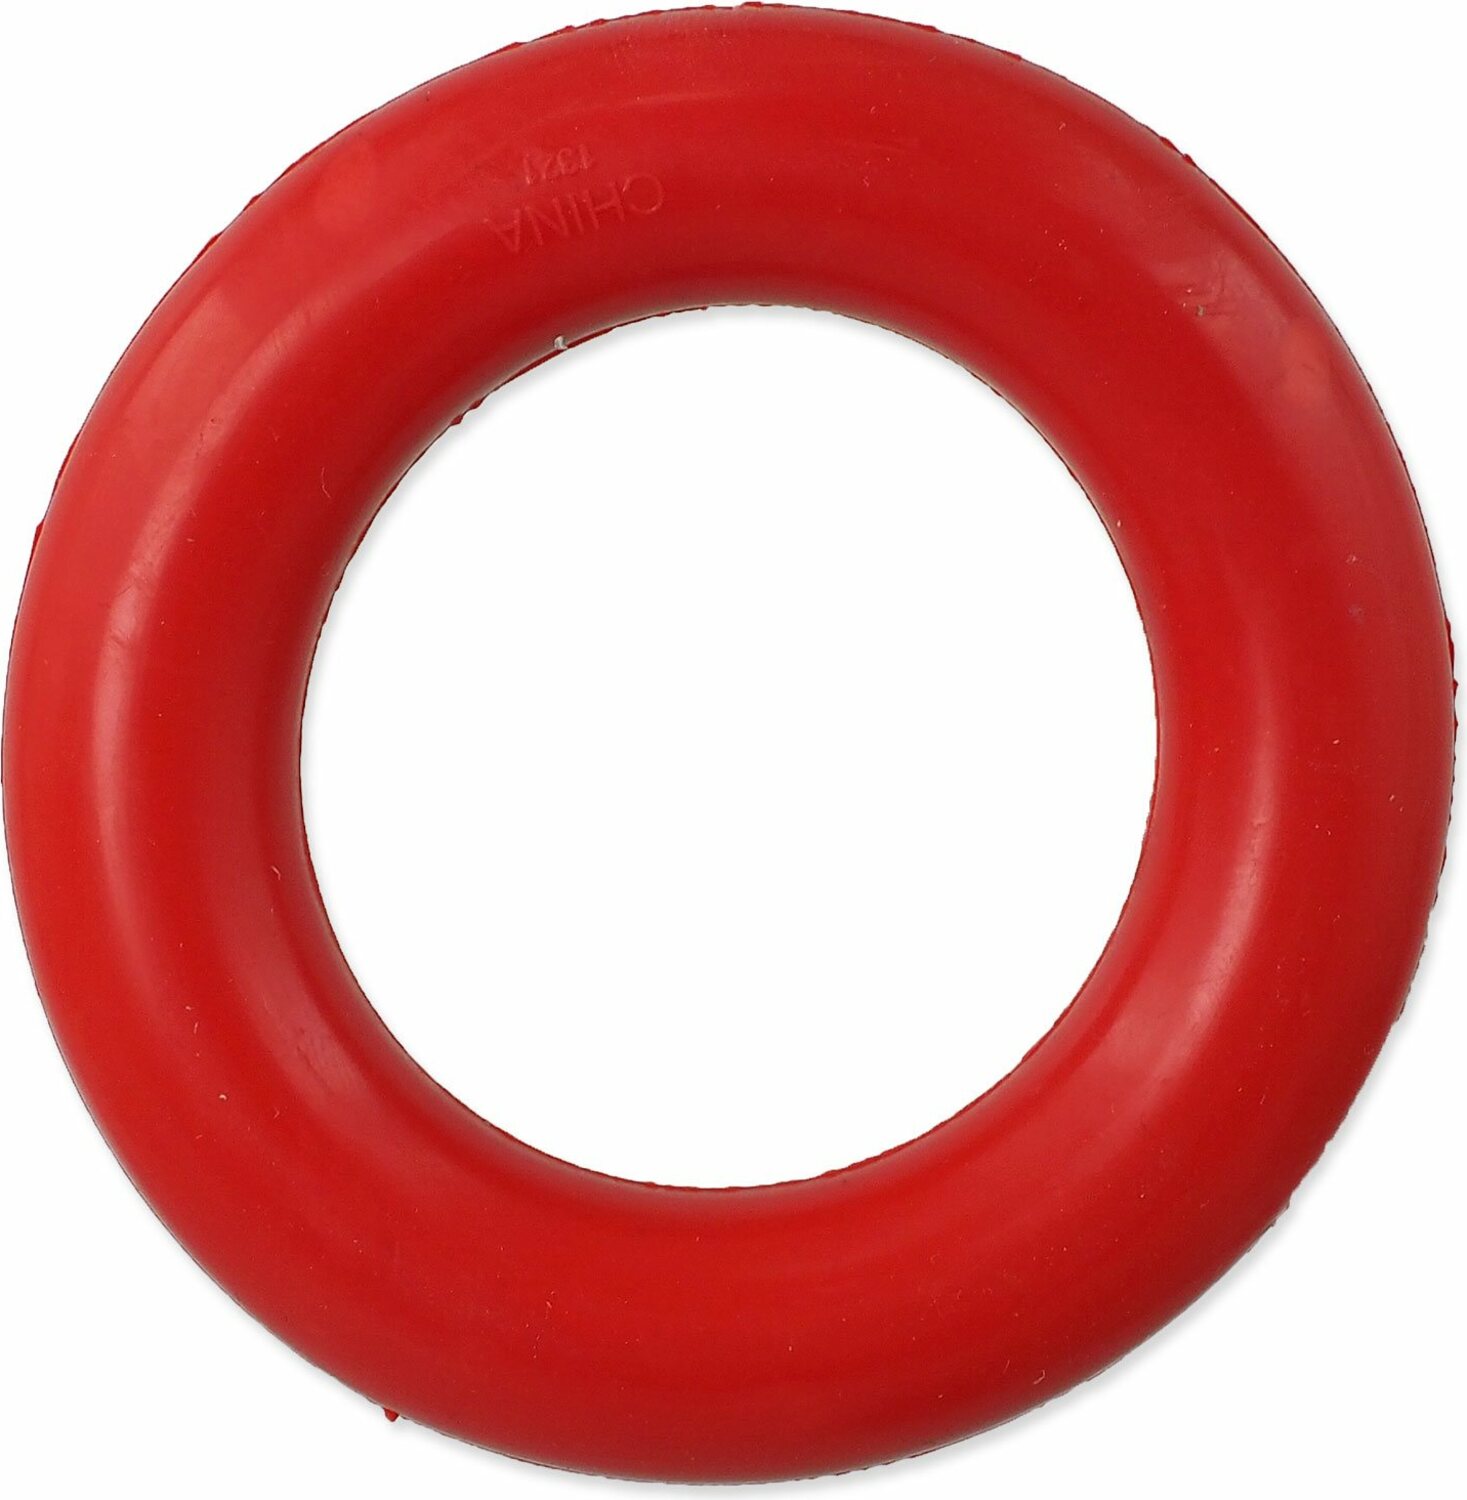 Hračka Dog Fantasy kruh červený 9cm